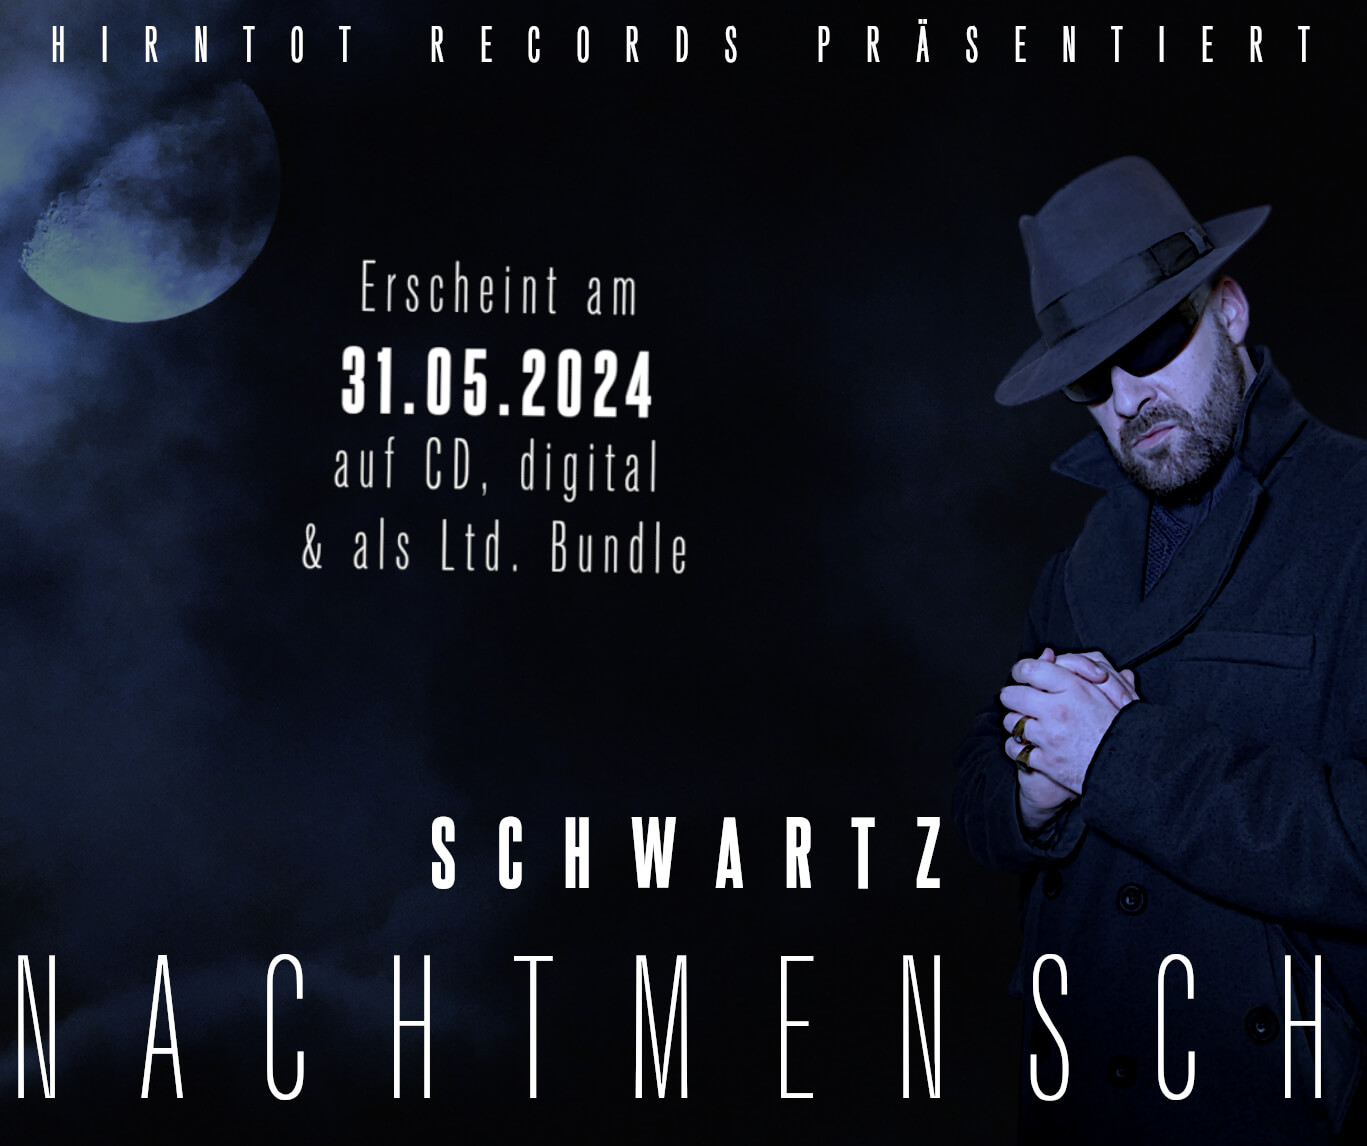 Schwartz - Nachtmensch